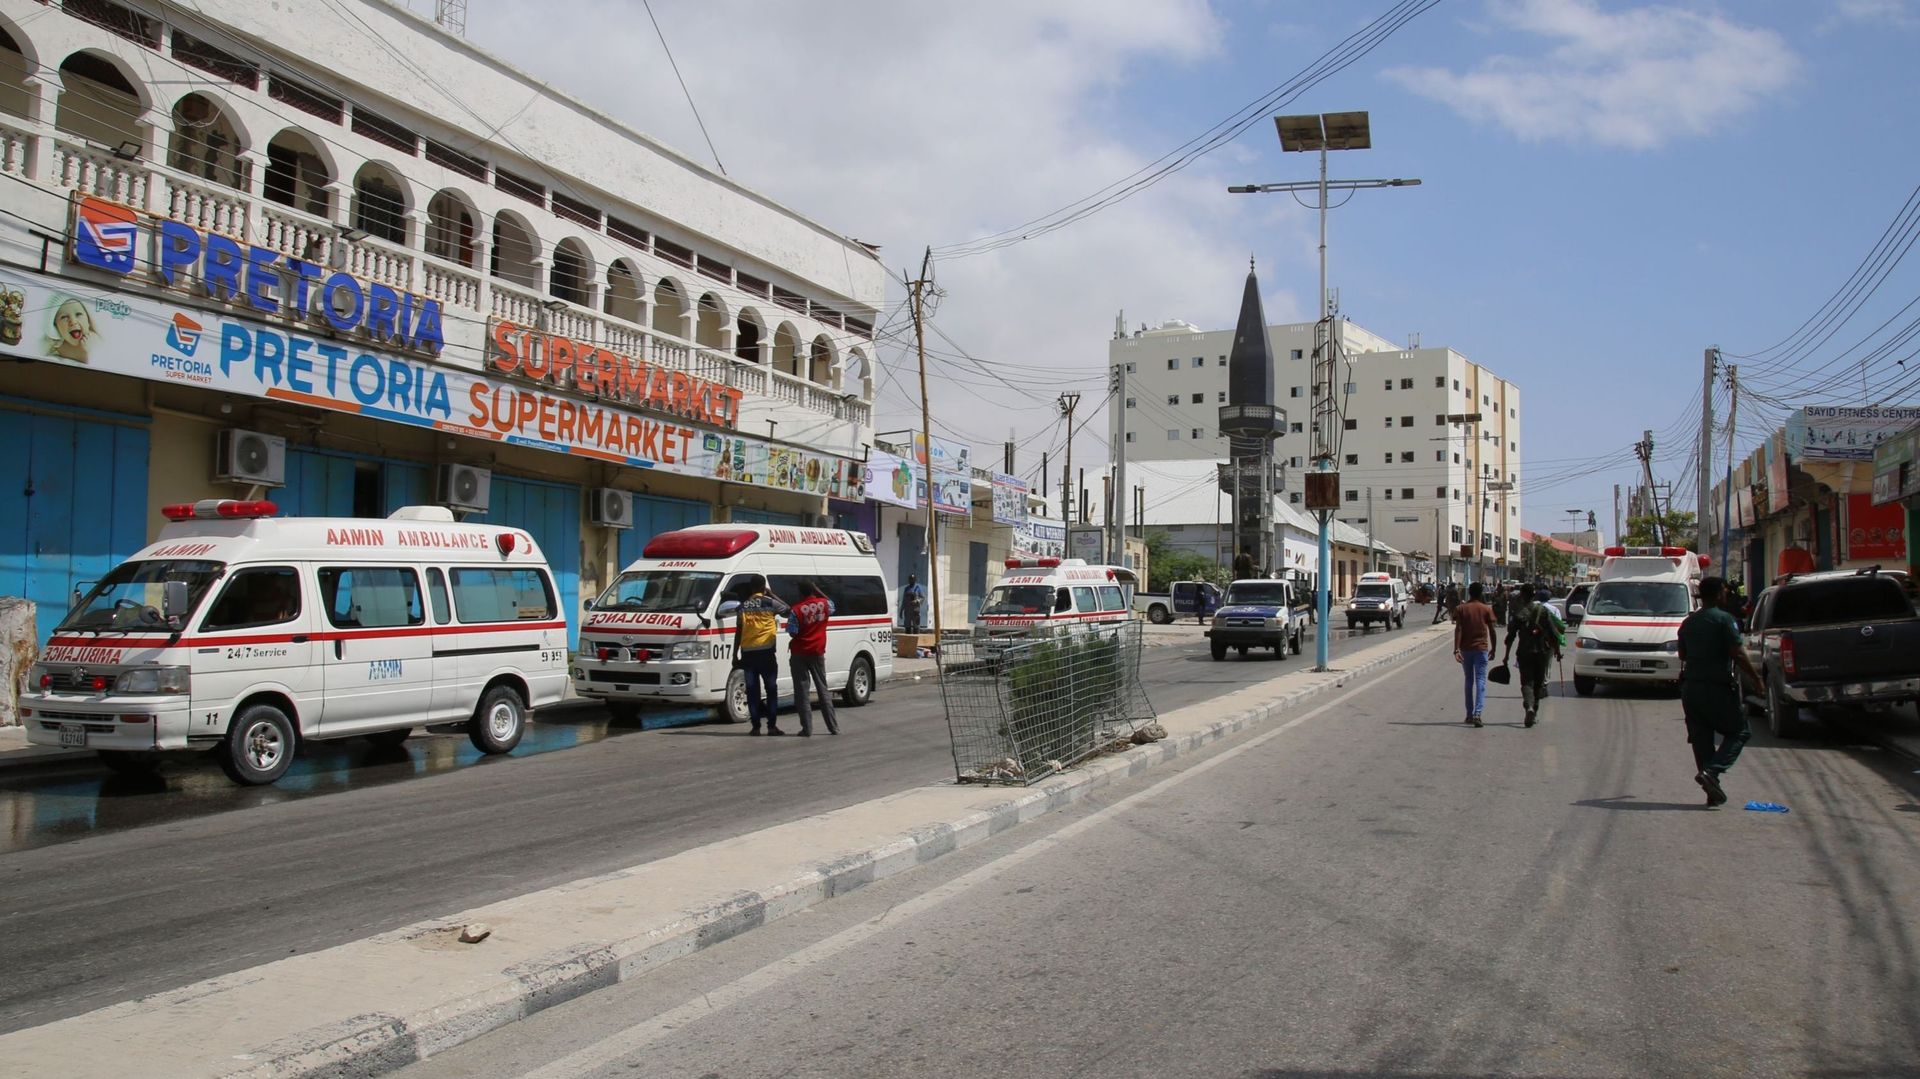 Image d'illustration : Des ambulances sont envoyées sur le site après un attentat à la voiture piégée près du Parlement somalien, dans la capitale du pays, Mogadiscio, le 8 janvier 2020.